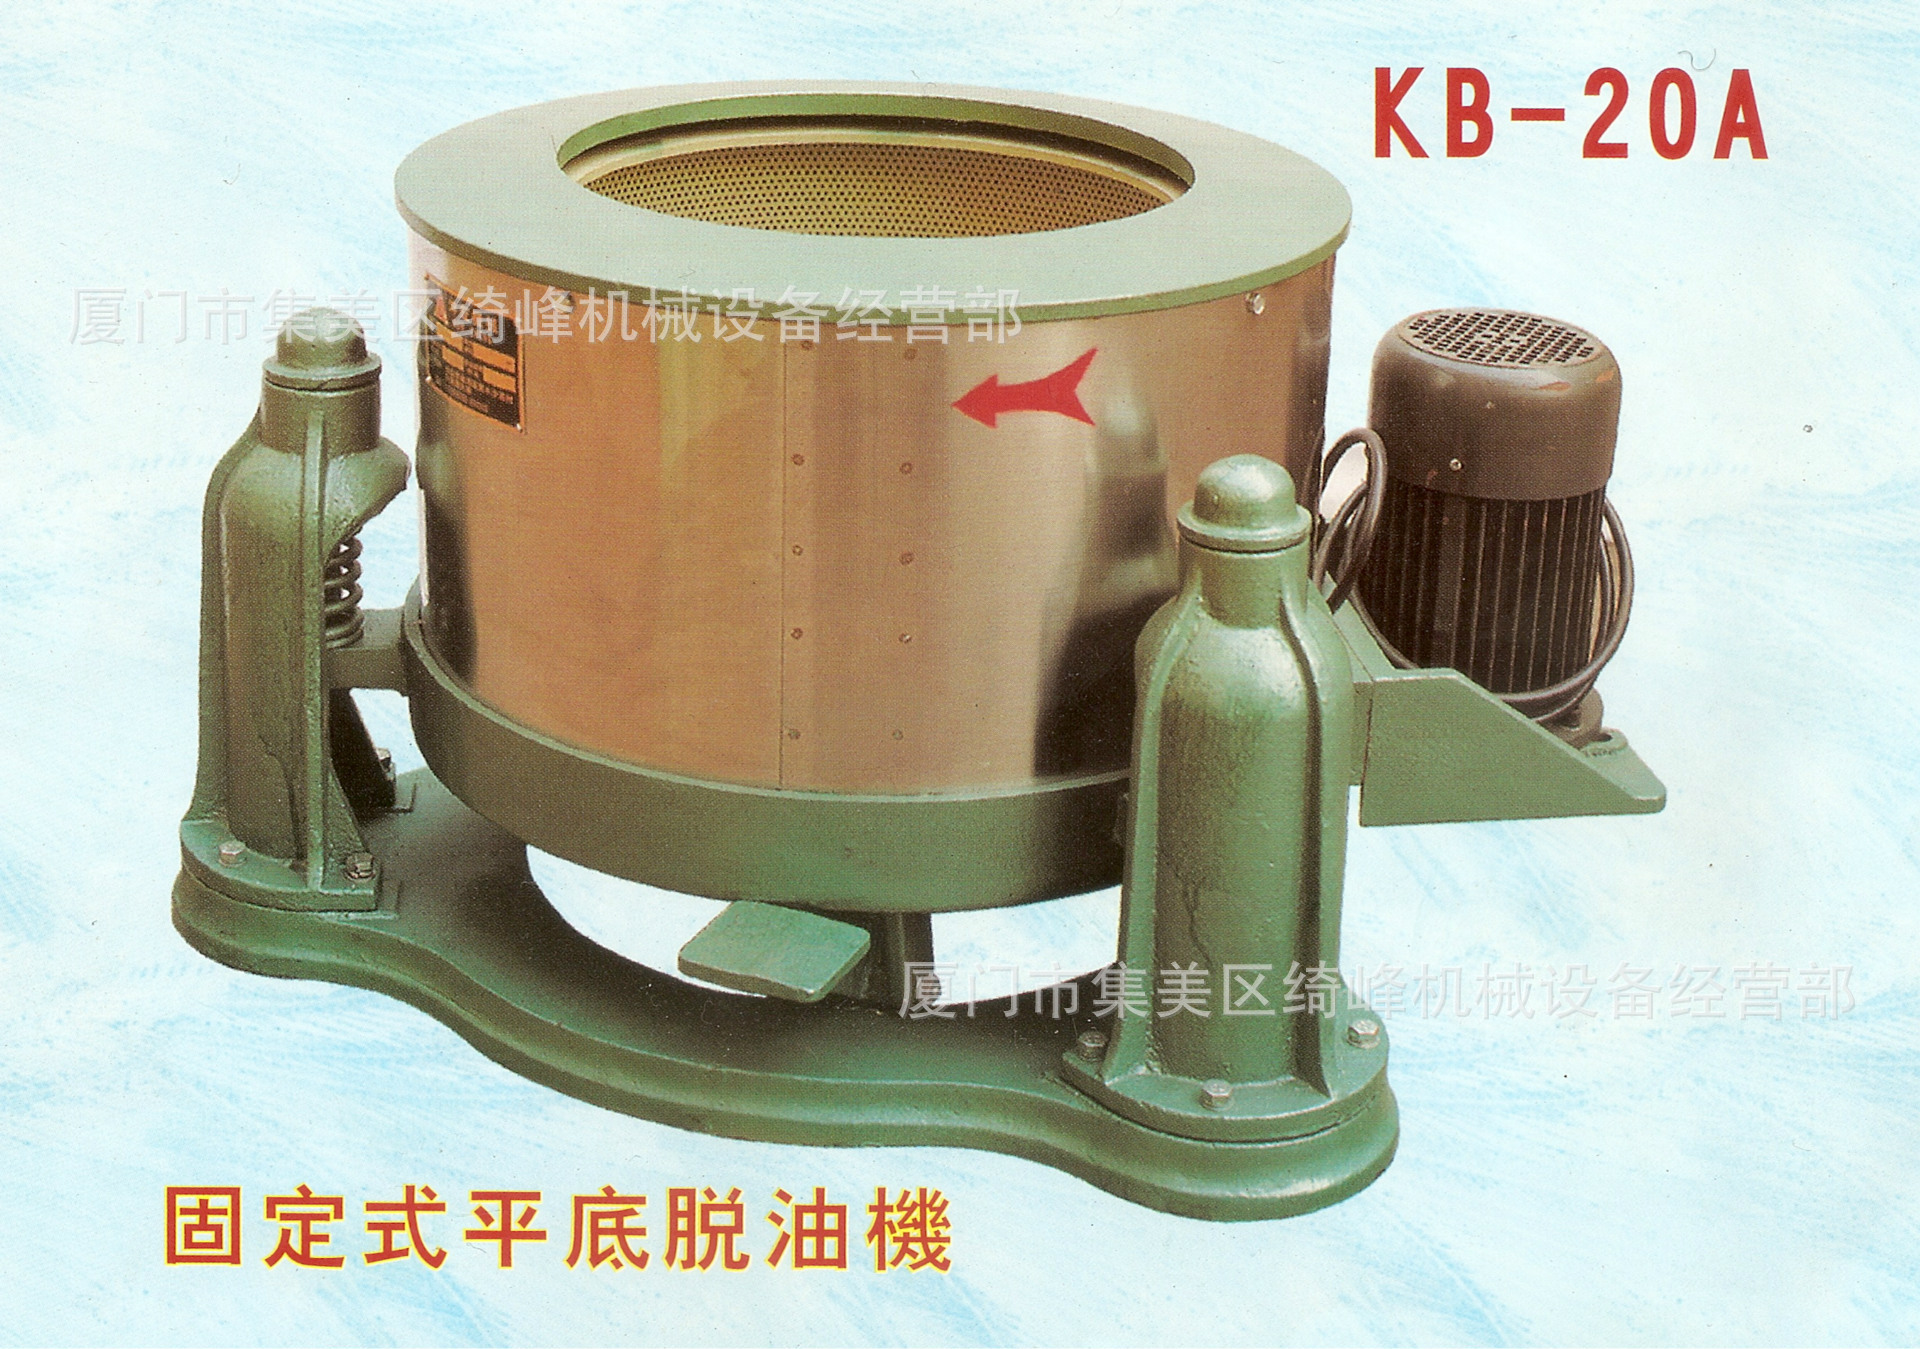 KB-20A固定式平底脫油機